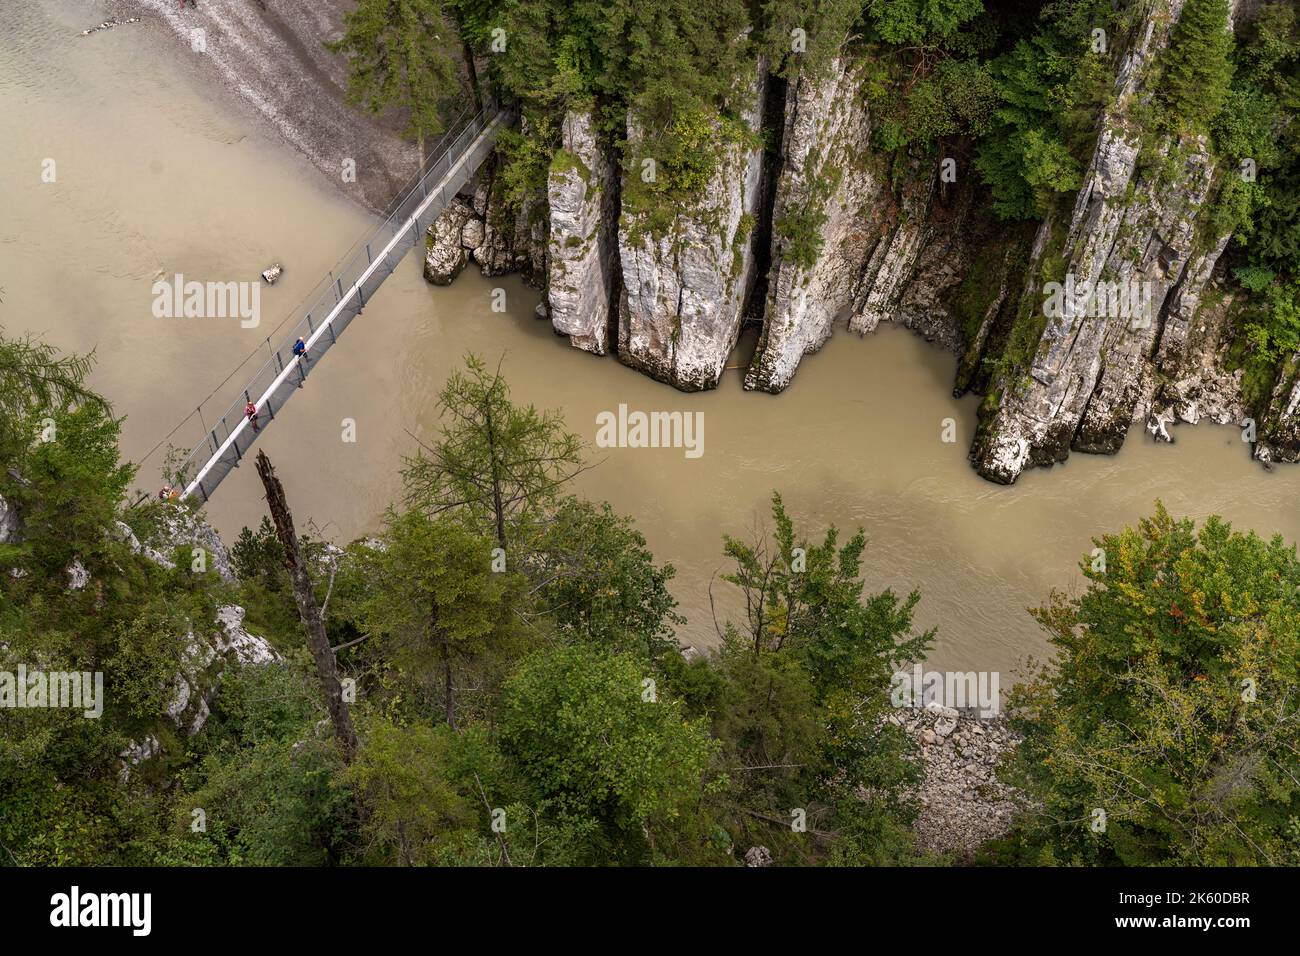 Blick von der Aussichtsplattform Eibenschlucht in die Schlucht und auf die  Hängebrücke über die Entenlochklamm, Kössen, Tirol, Österreich |  View fro Stock Photo